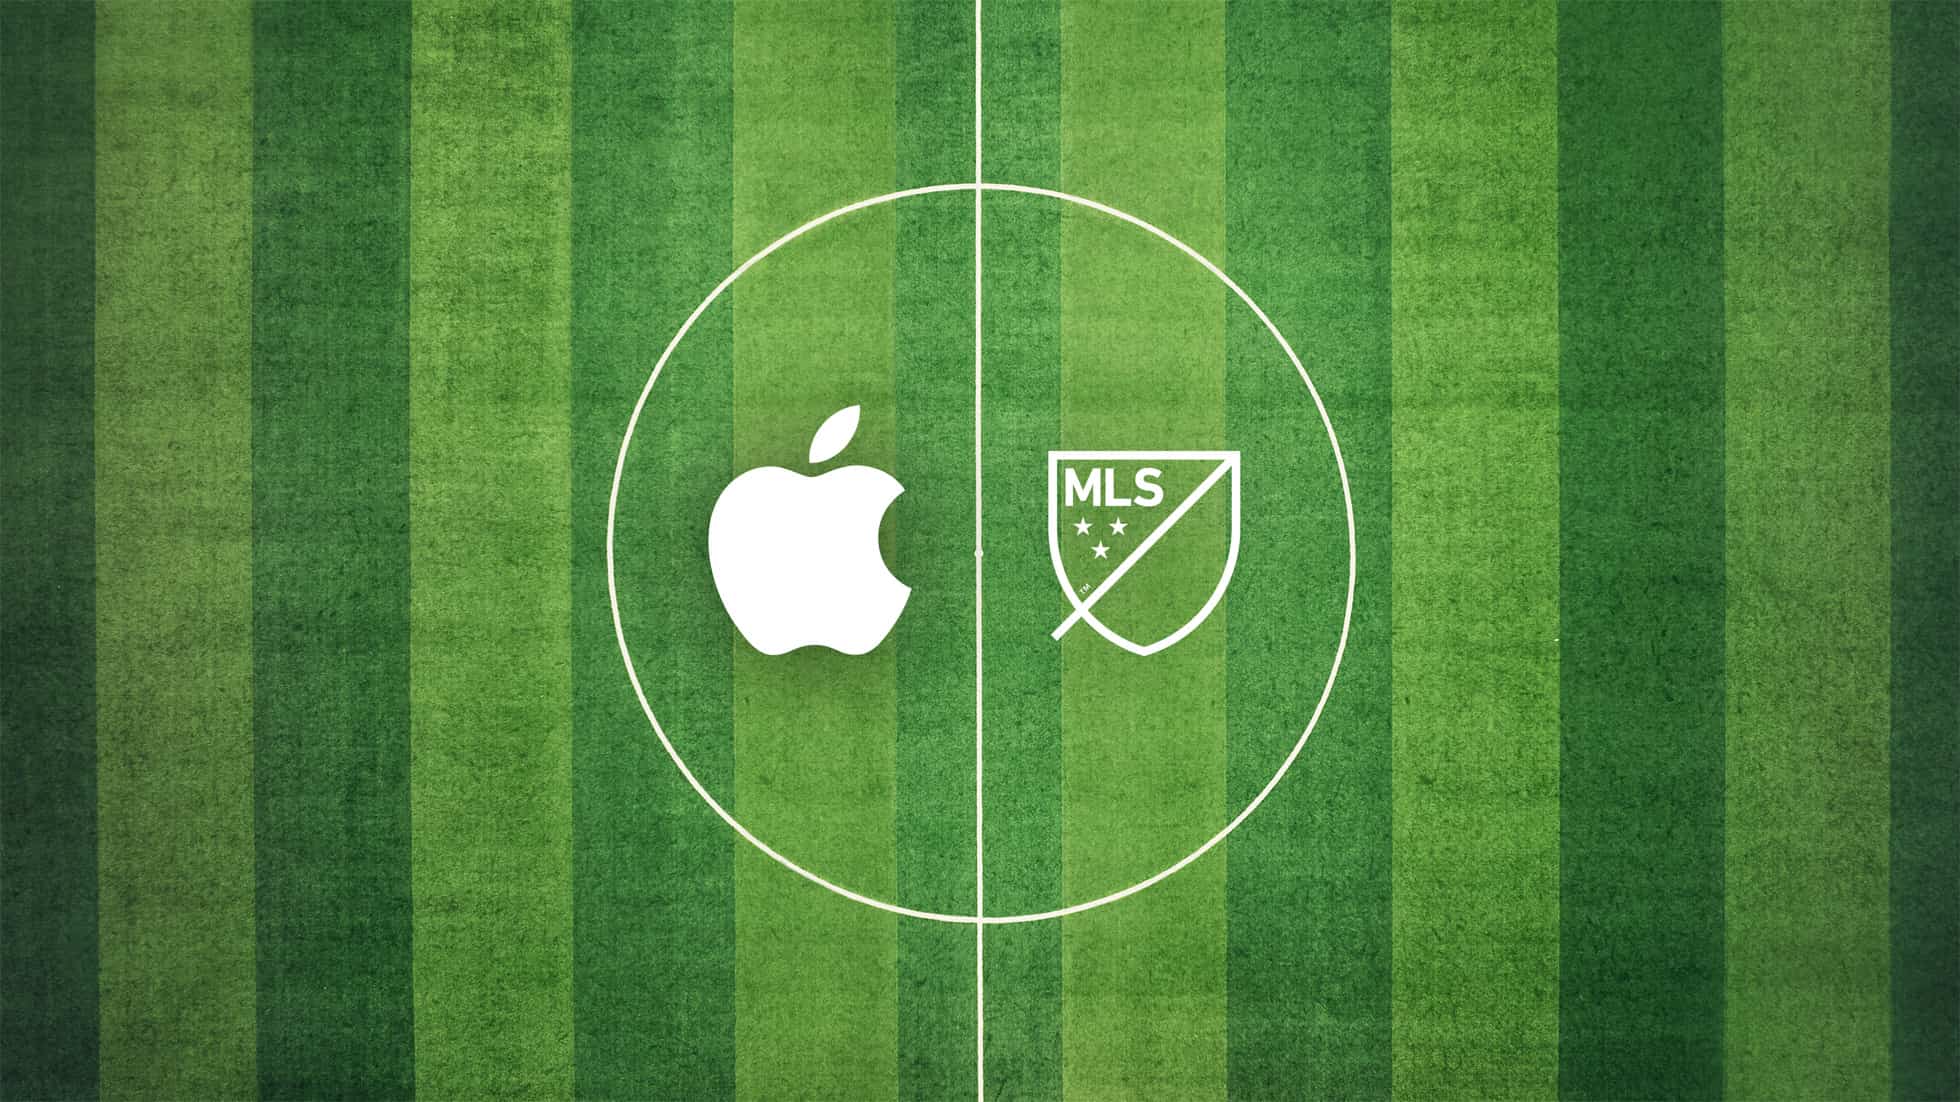 Cette image marketing d'Apple illustre un partenariat exclusif de streaming de contenu de dix ans entre Apple et la Major League Soccer, qui débute en 2023